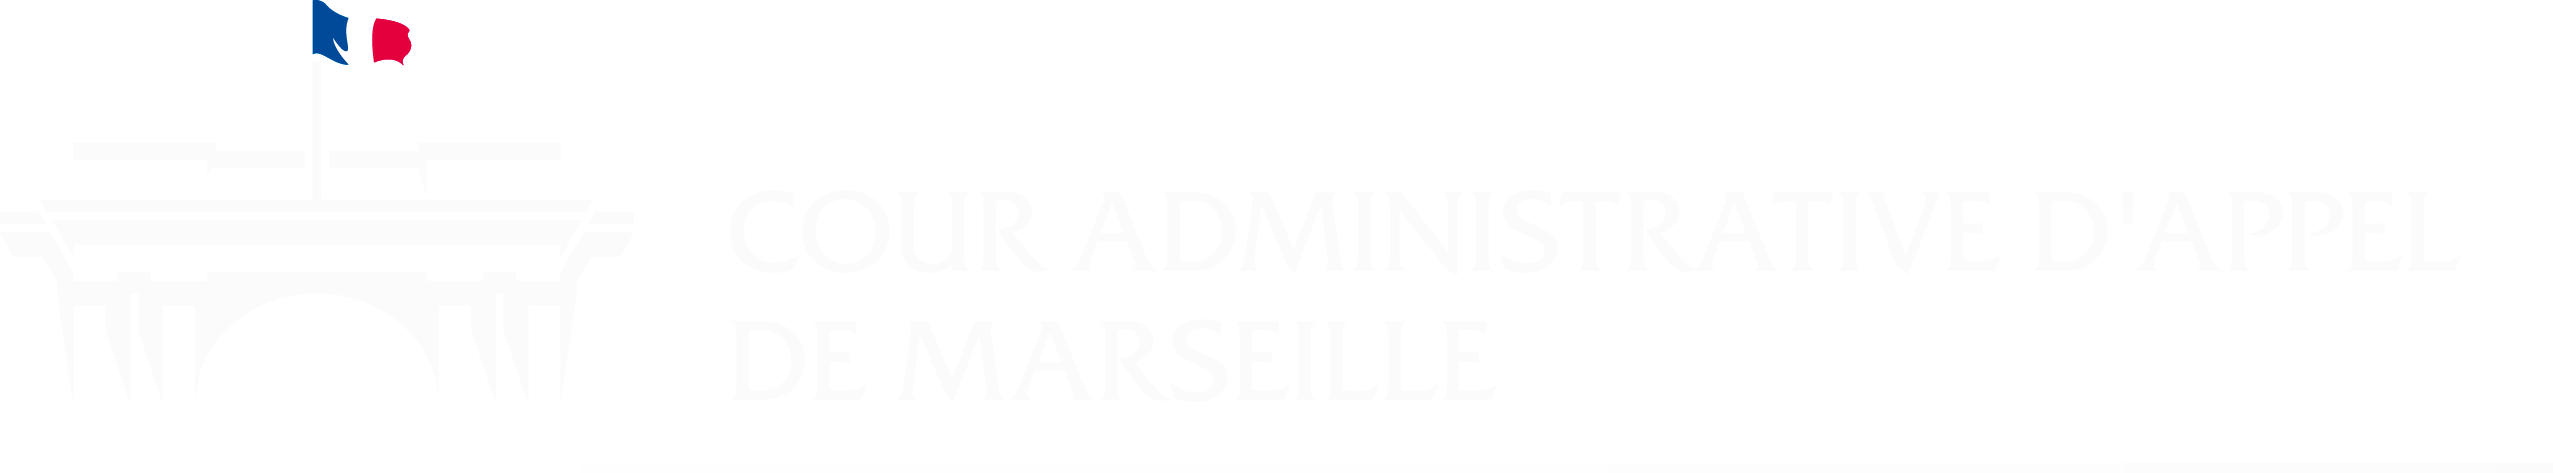 Cour administrative d'appel de Marseille - Retour à l'accueil